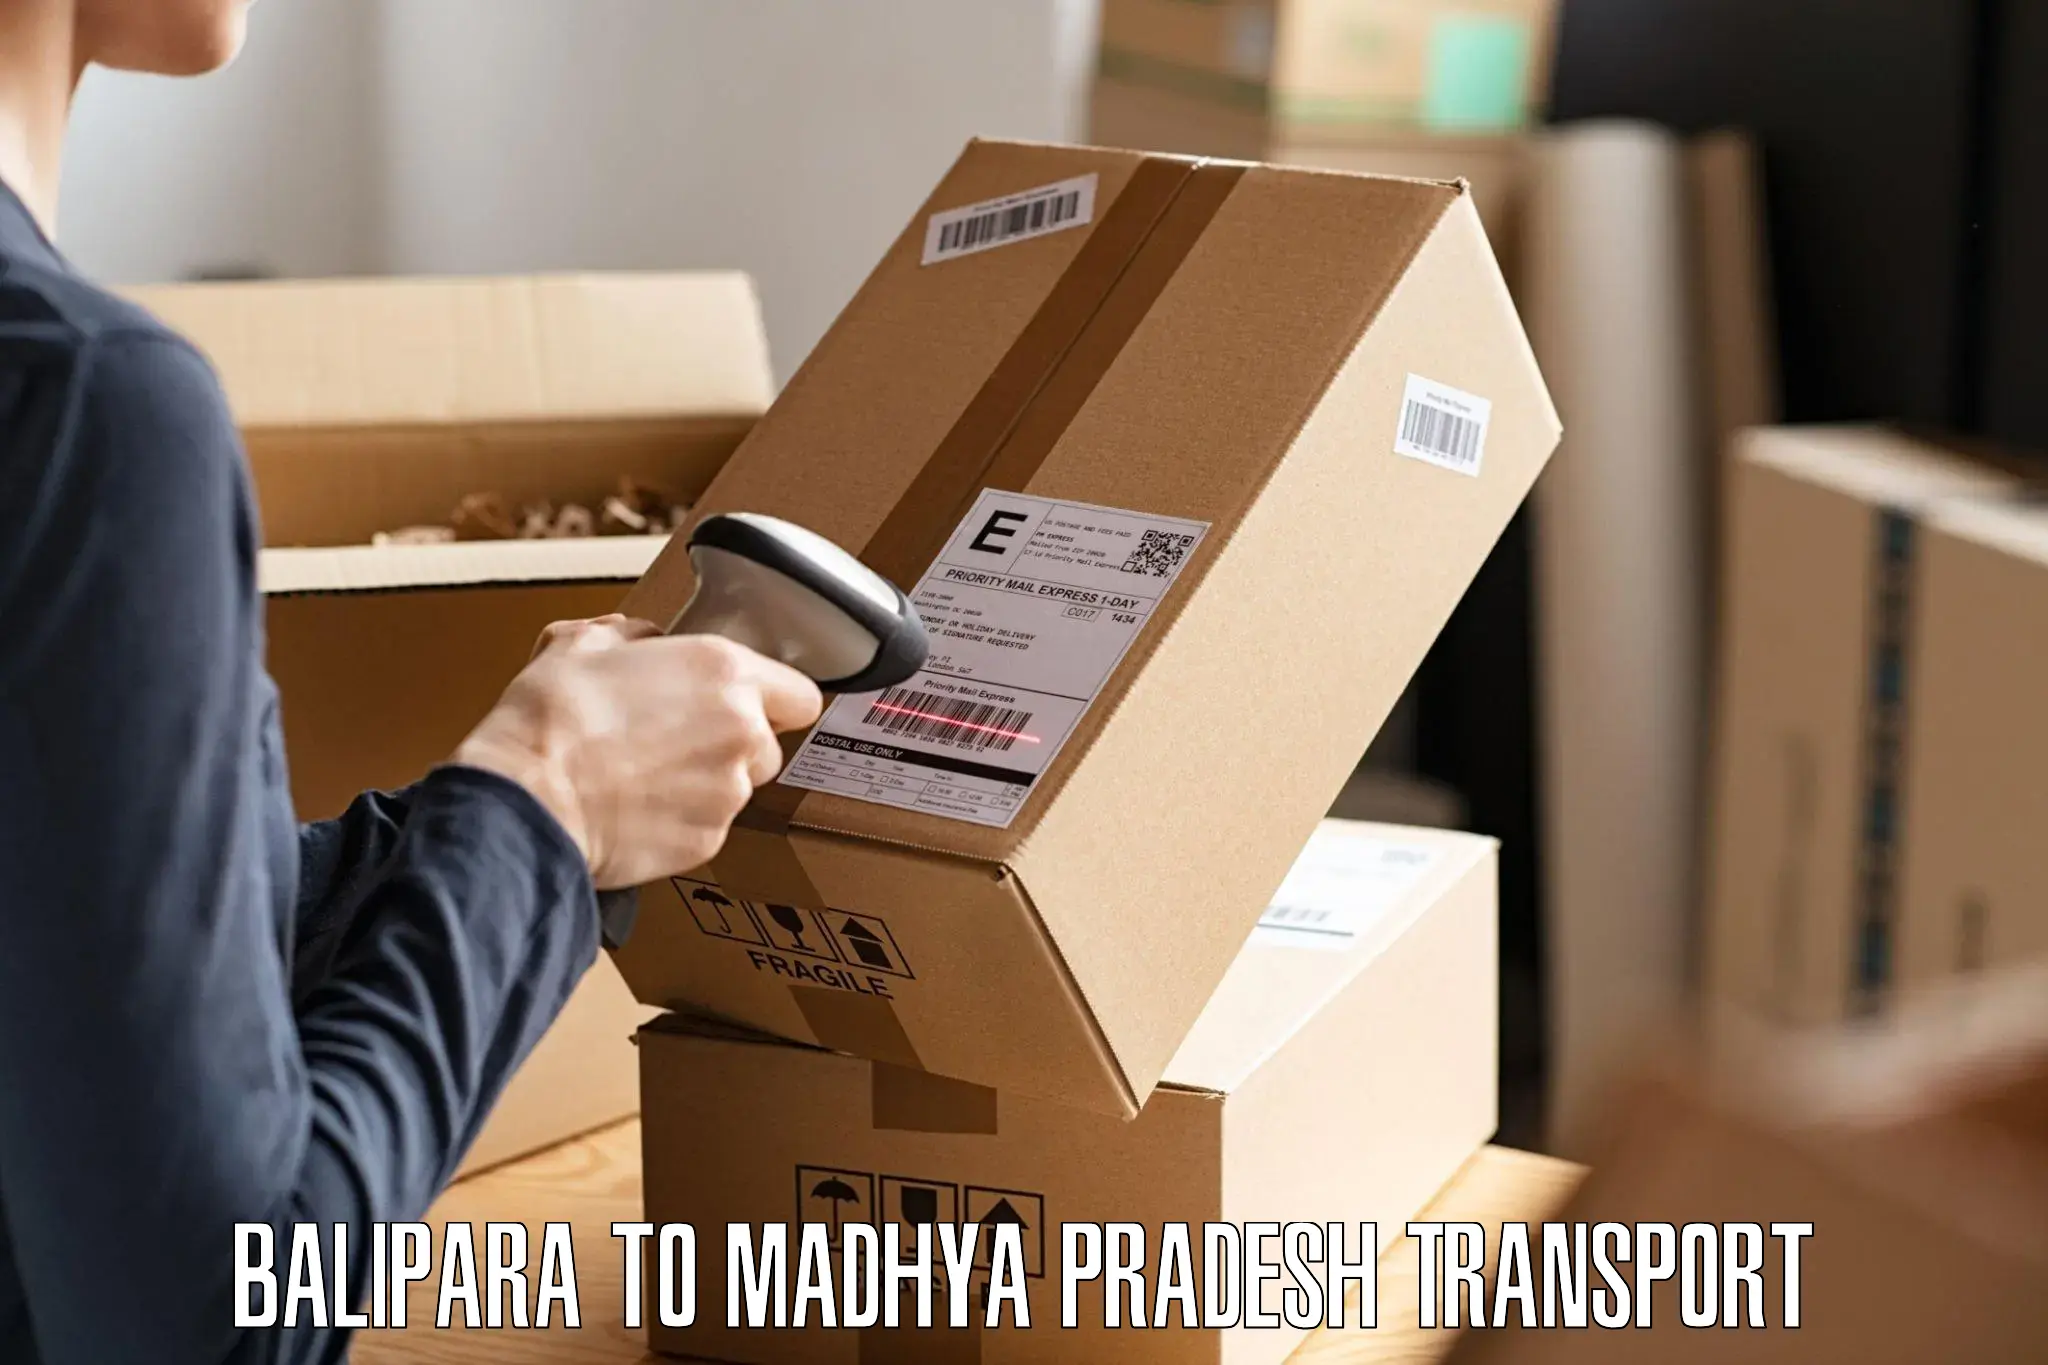 Furniture transport service Balipara to Nalkheda